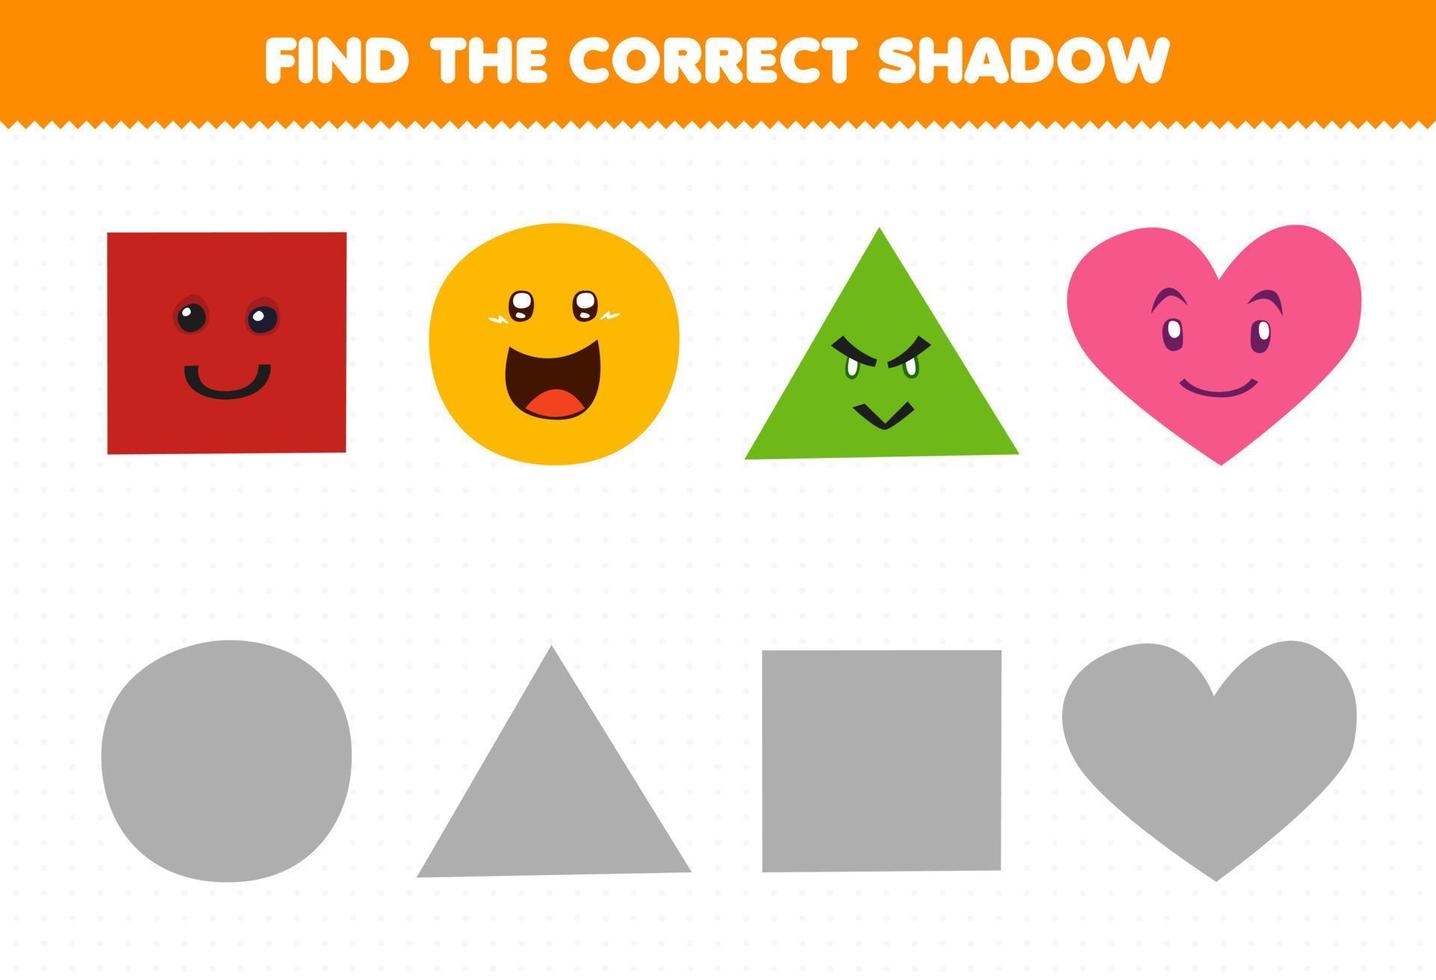 juego educativo para niños encontrar la sombra correcta conjunto de dibujos animados lindo forma geométrica cuadrado círculo triángulo corazón vector